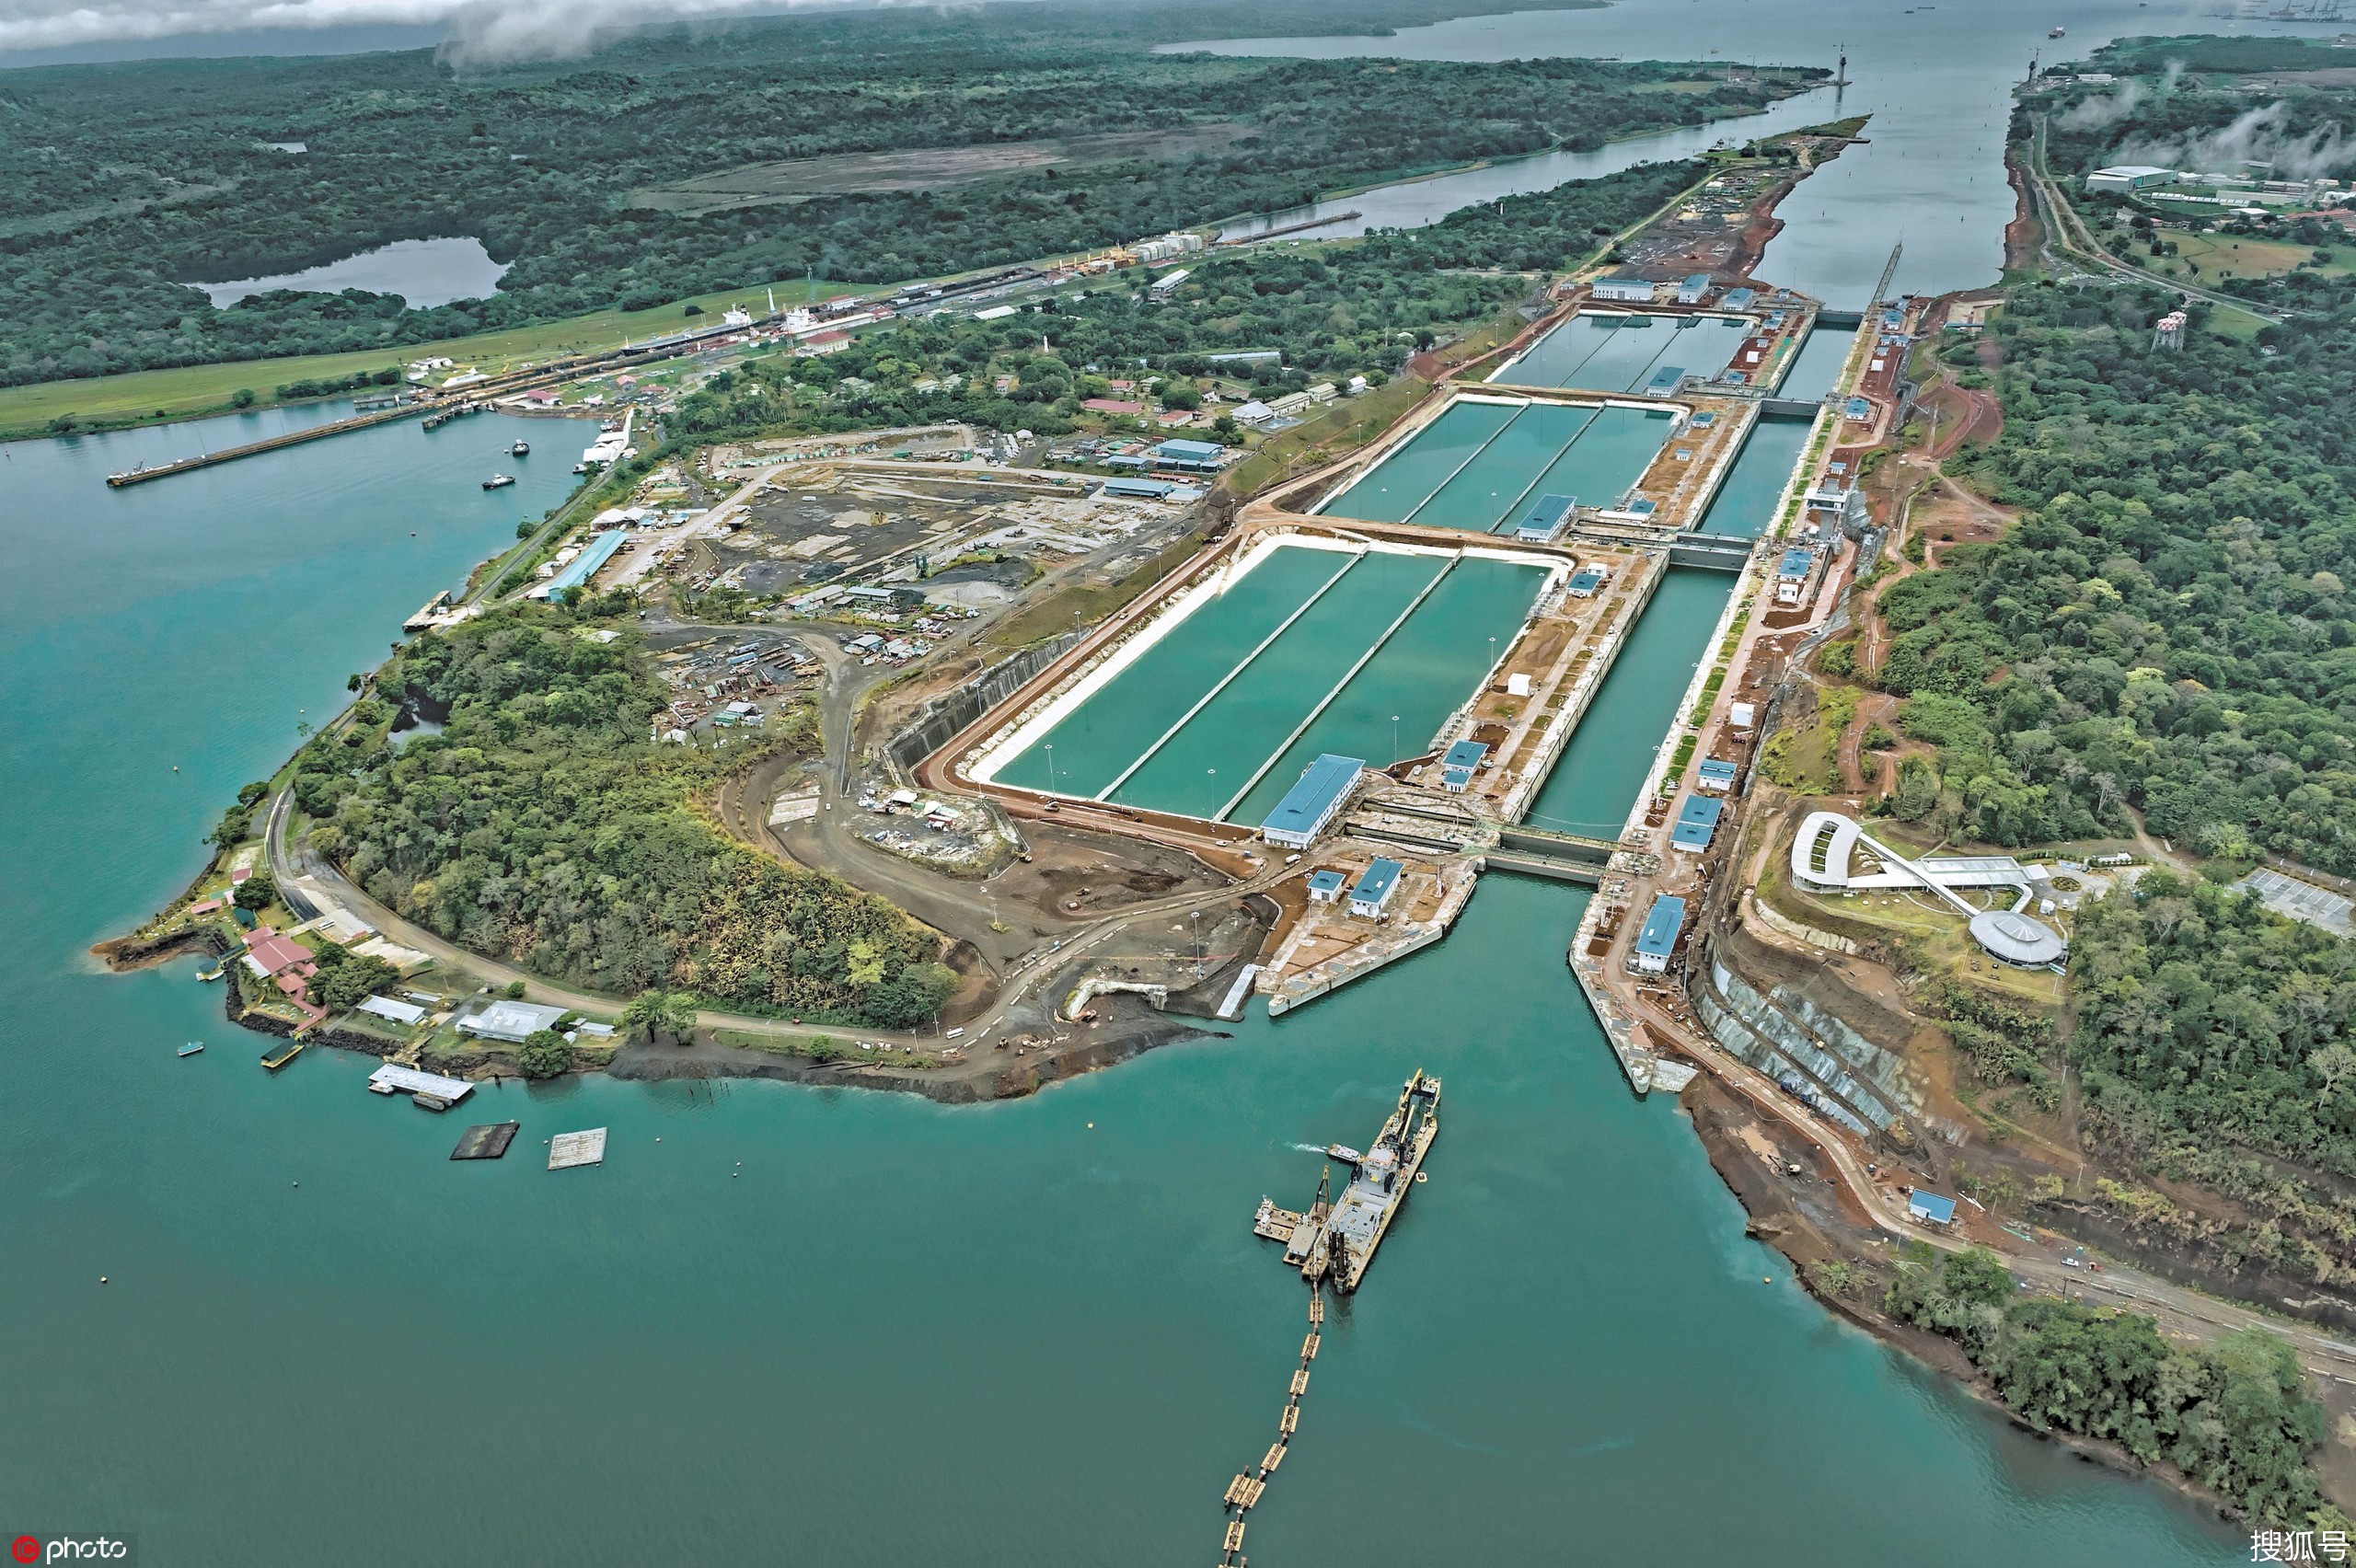 人类历史上最宏伟的工程奇迹之一:巴拿马运河